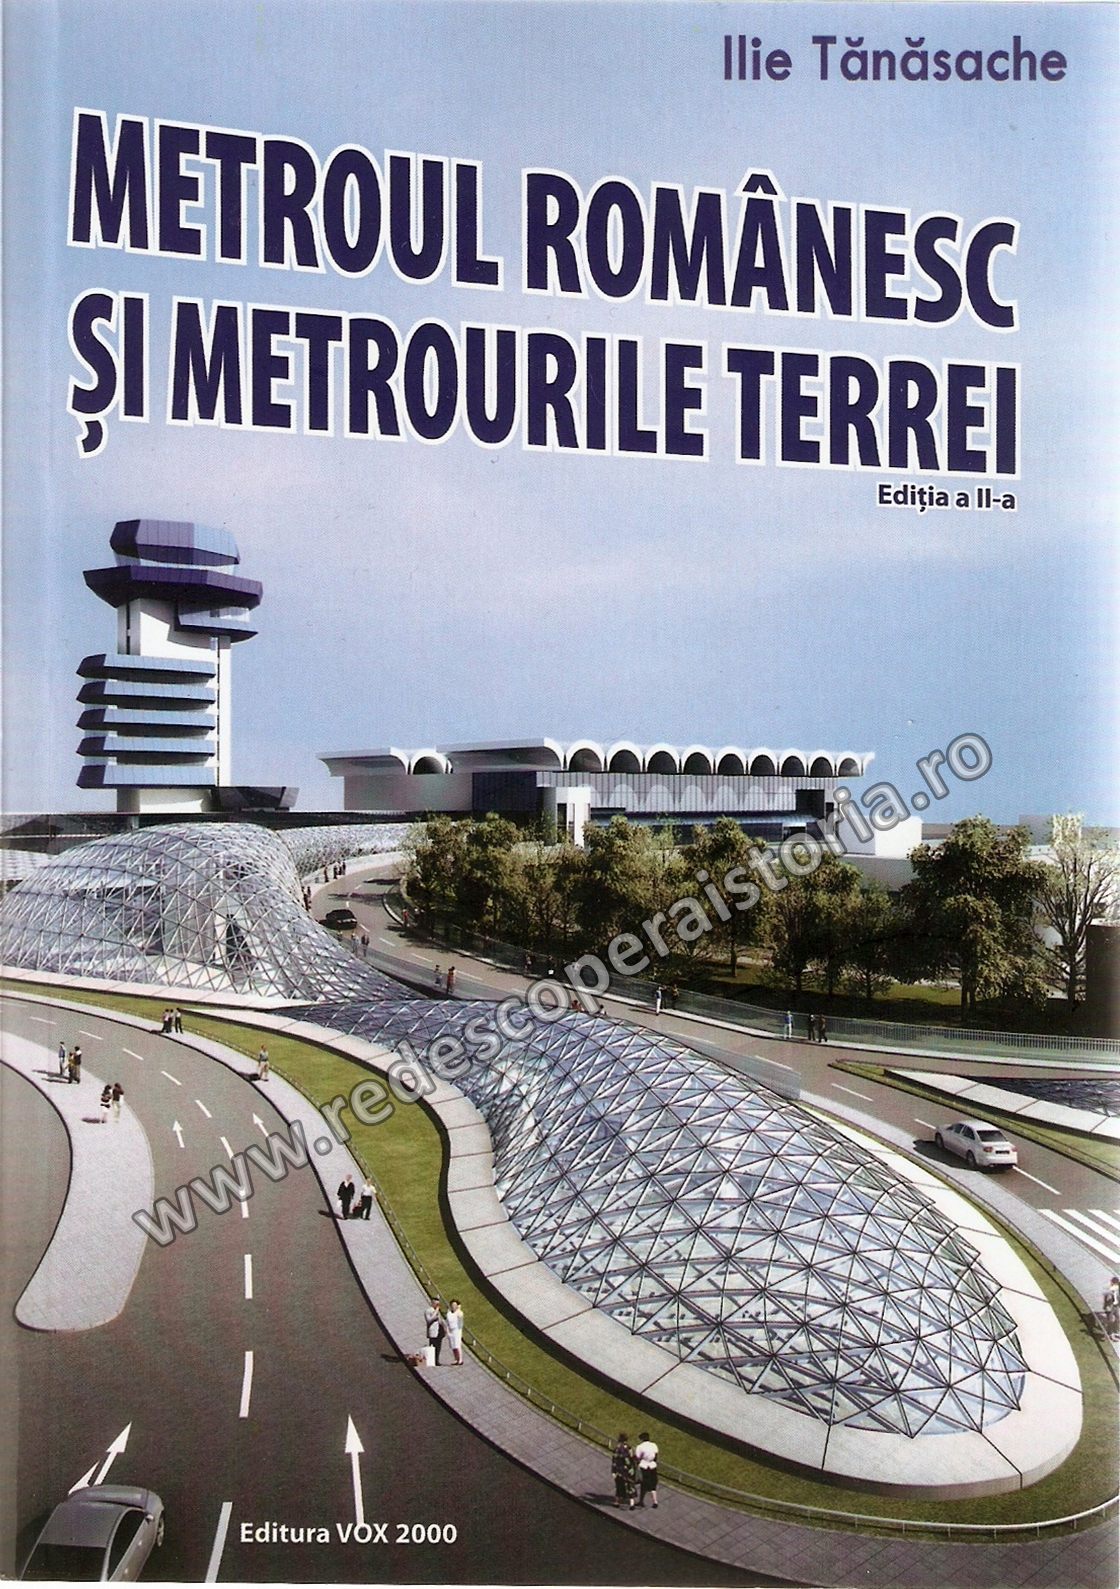 Lansare de carte: Ilie Tănăsache – Metroul românesc și metrourile Terrei (ediția a II-a)